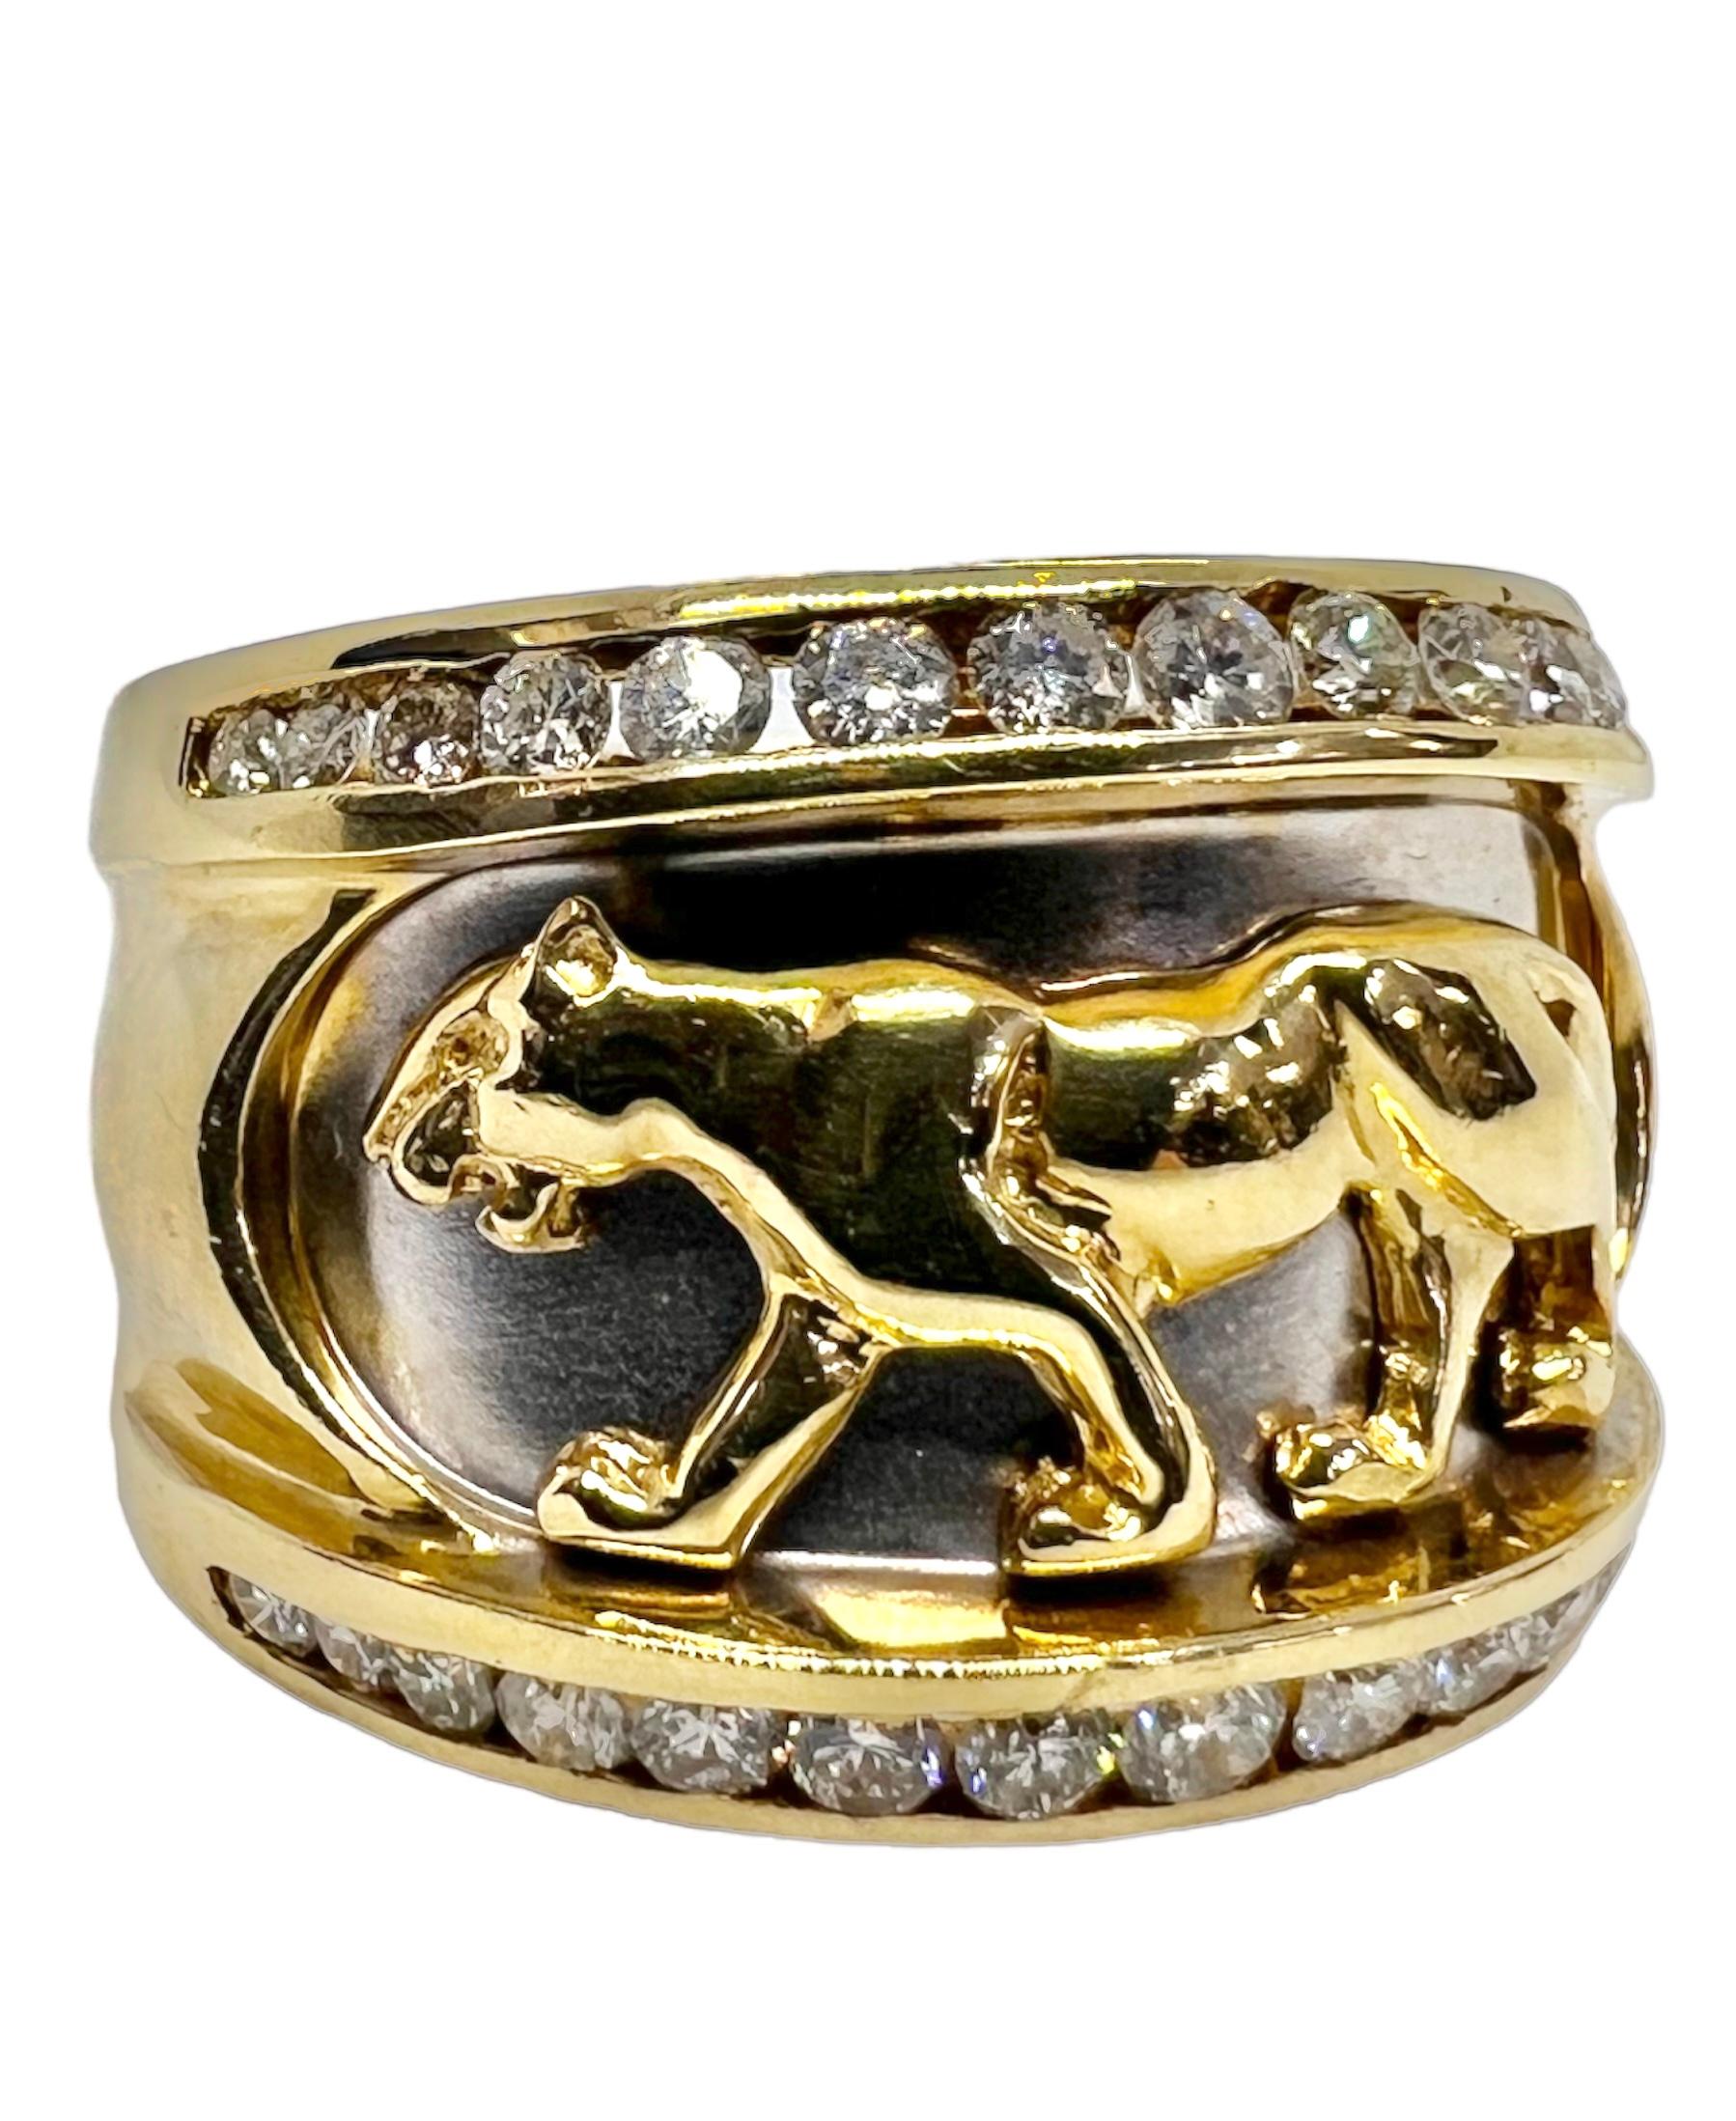 Ring aus 14K Gelbgold mit geschnitztem Tiger und kleinen runden Diamanten.

Sophia D von Joseph Dardashti LTD ist seit 35 Jahren weltweit bekannt und lässt sich vom klassischen Art-Déco-Design inspirieren, das mit modernen Fertigungstechniken